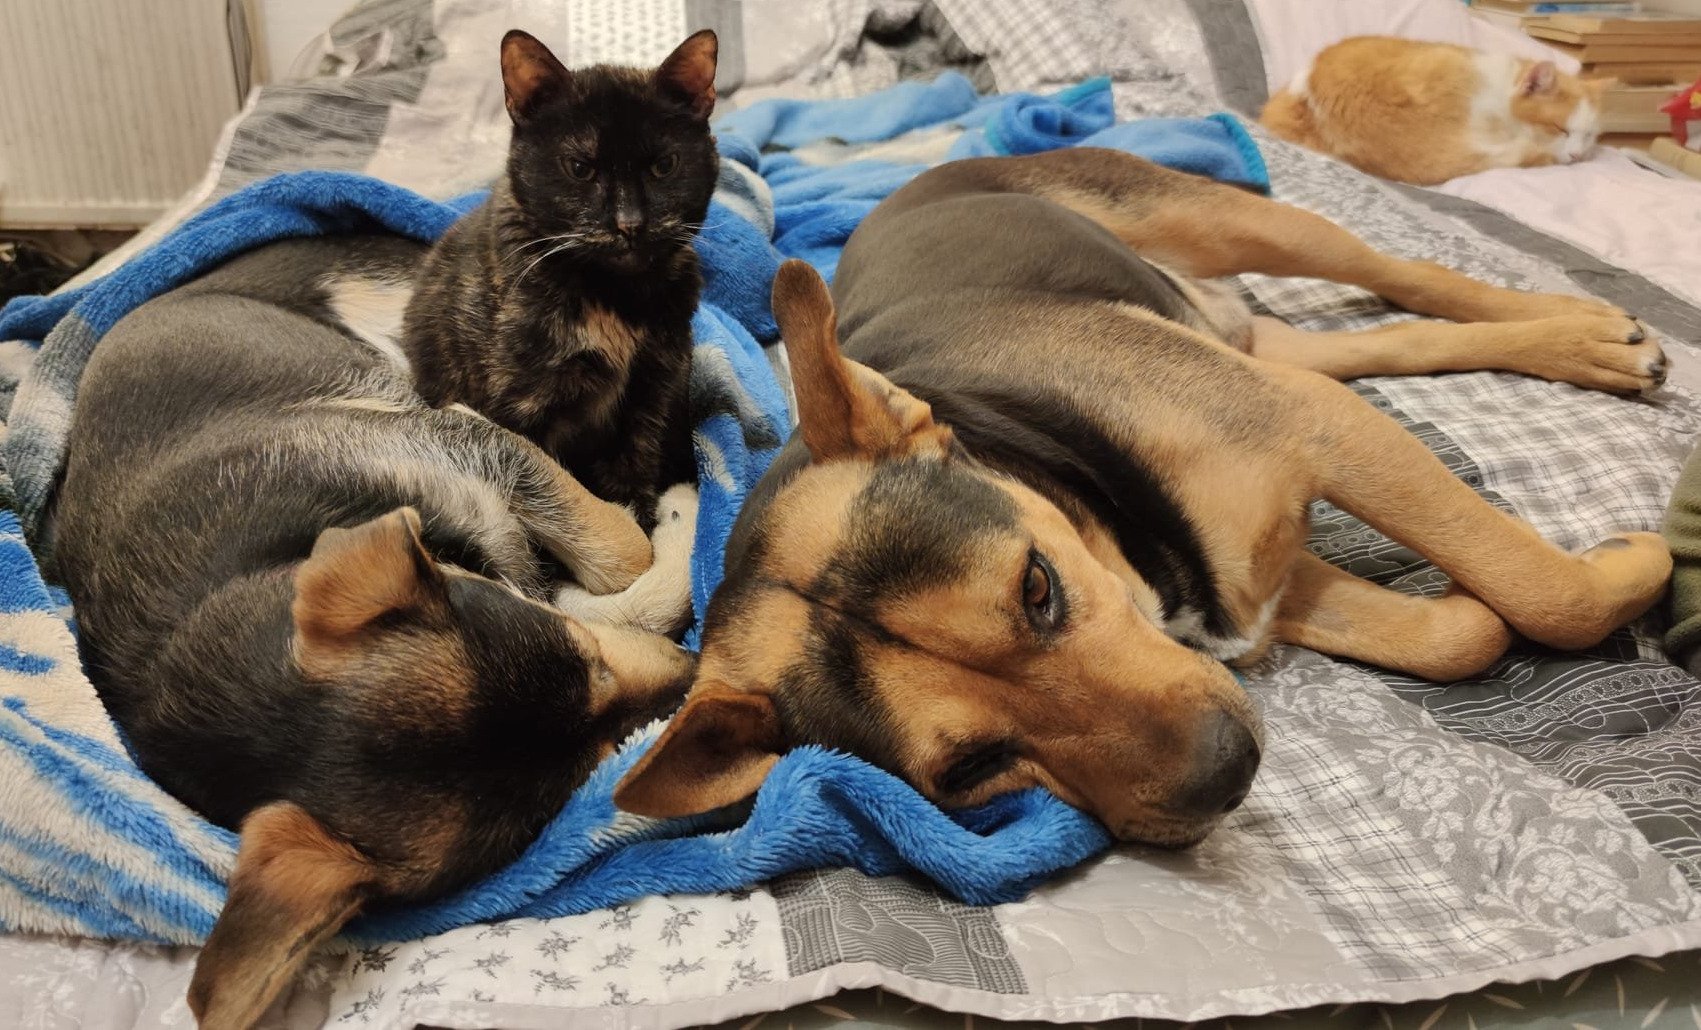 Kutyák és cicák együtt / Doggies and kitties together